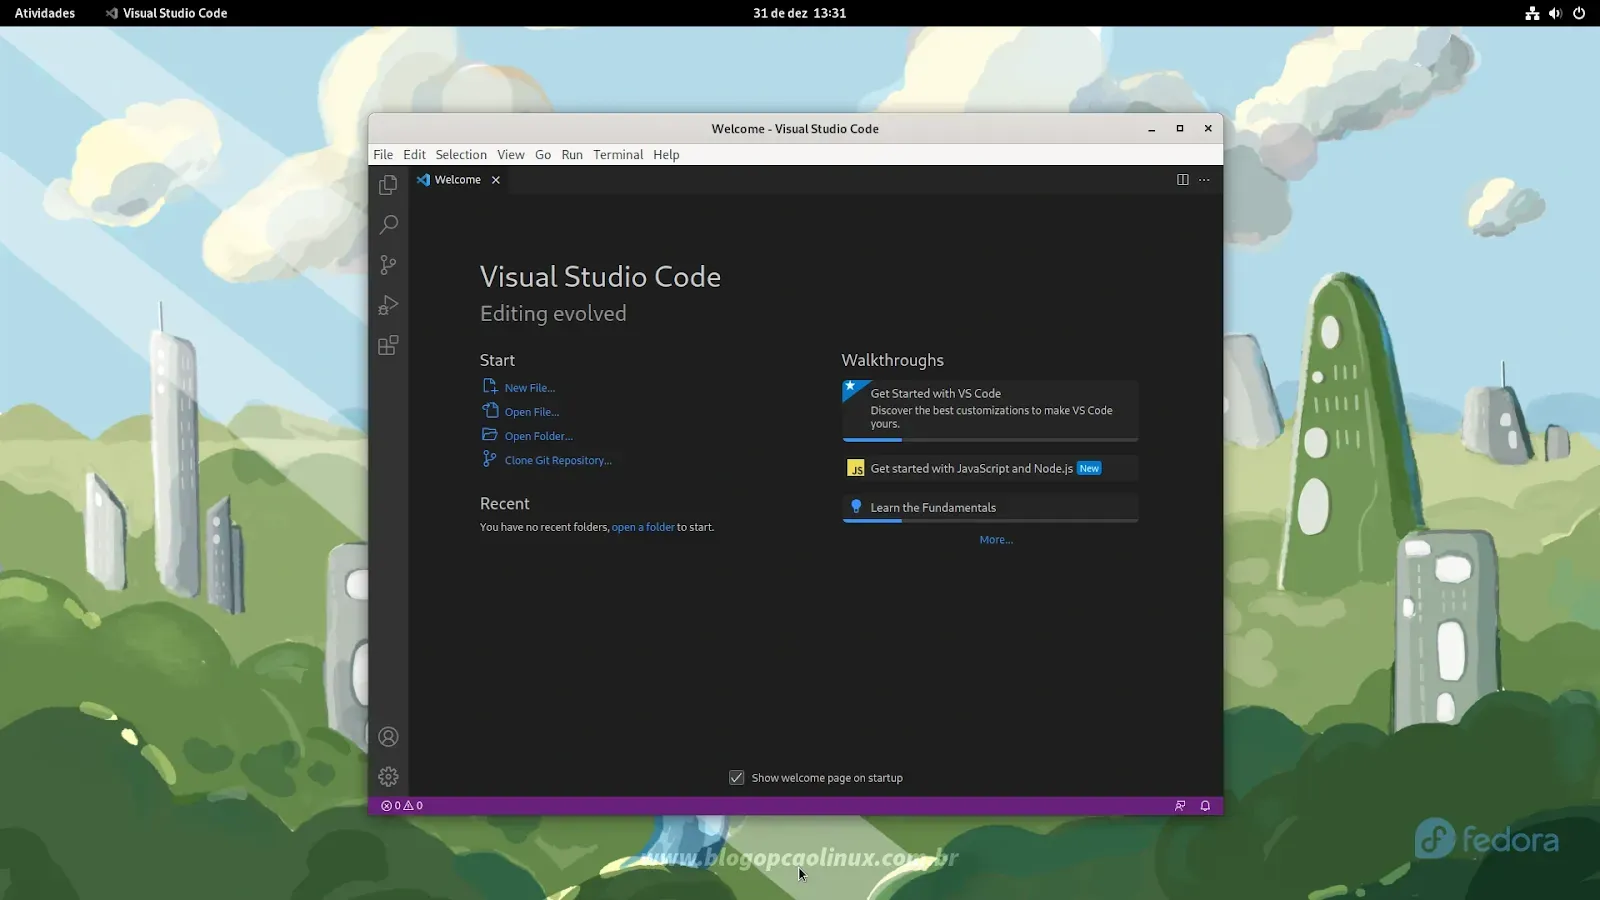 Visual Studio Code executando no Fedora 37 Workstation com o ambiente de desktop GNOME Shell